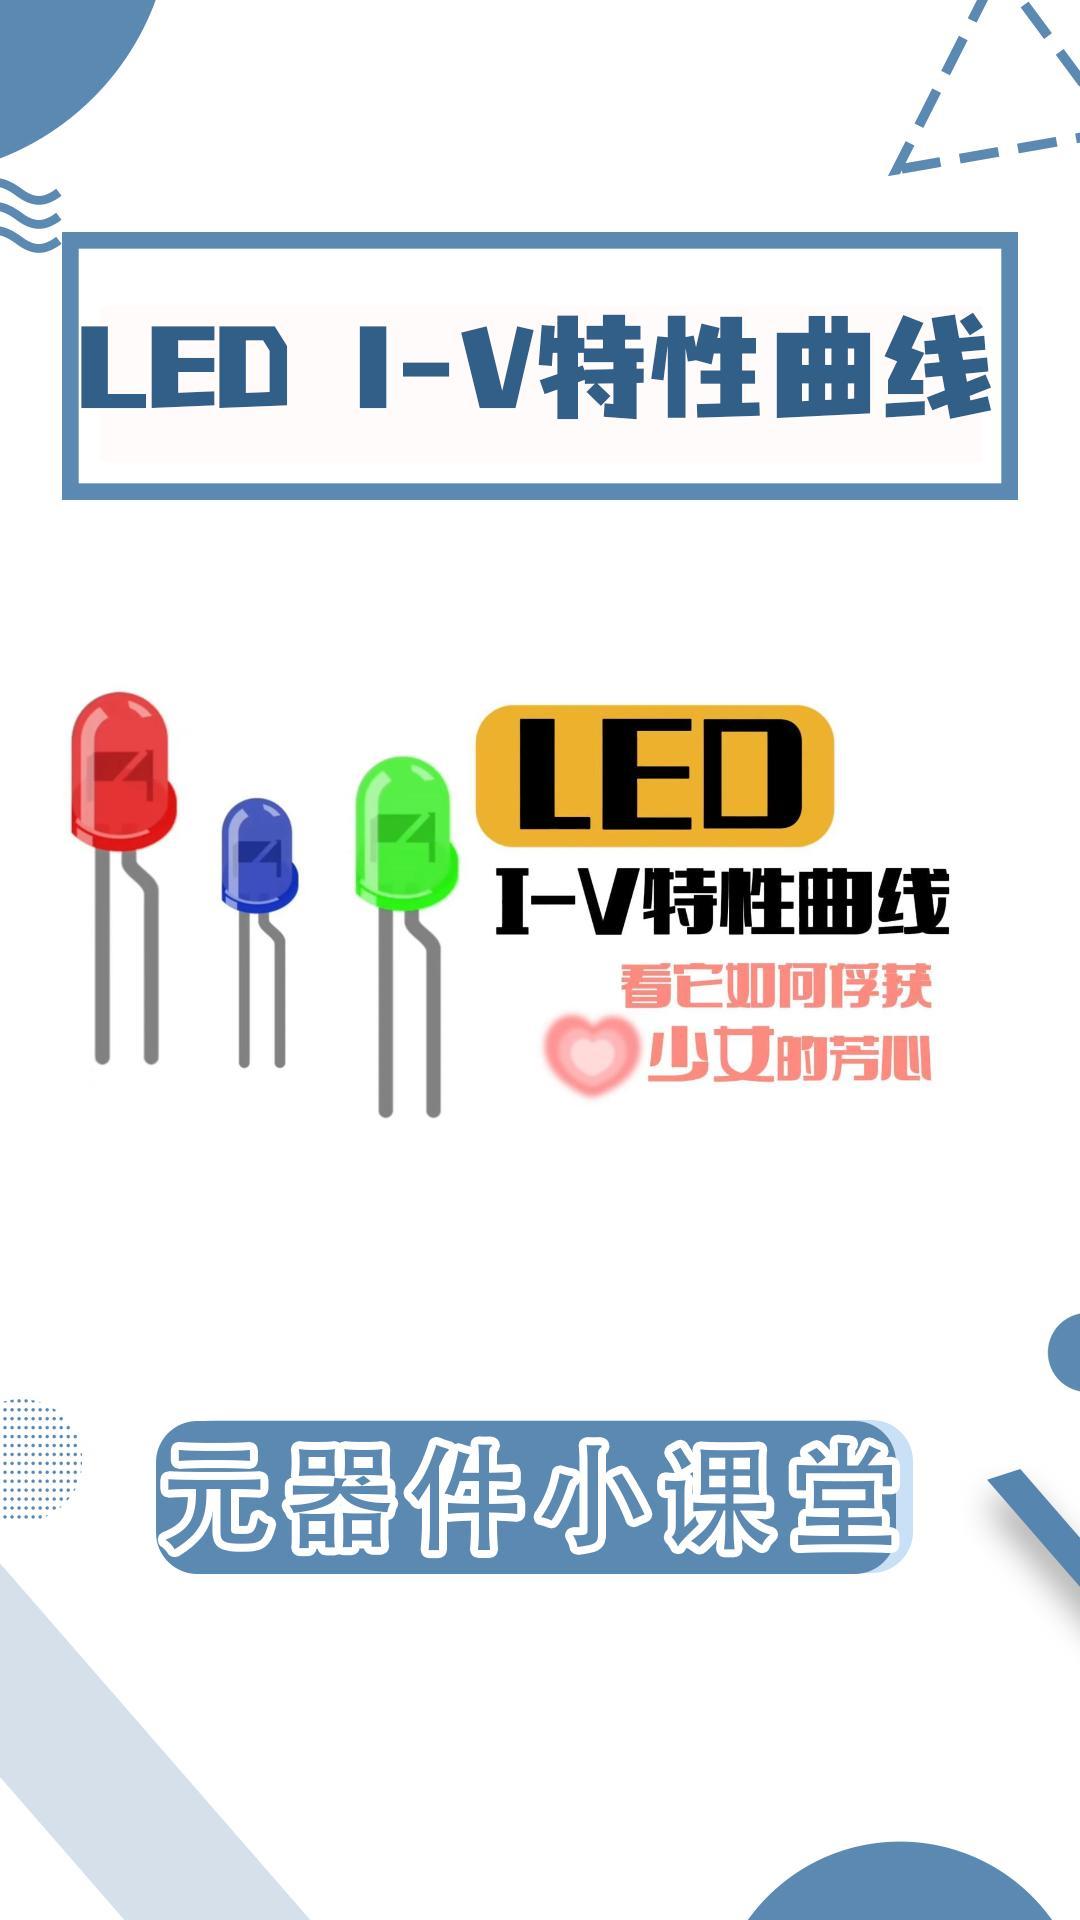 來看理科男的浪漫|LED I-V特性曲線測試#吉時利數字源表 #源表 #led燈 #LED顯示屏 #電路知識 